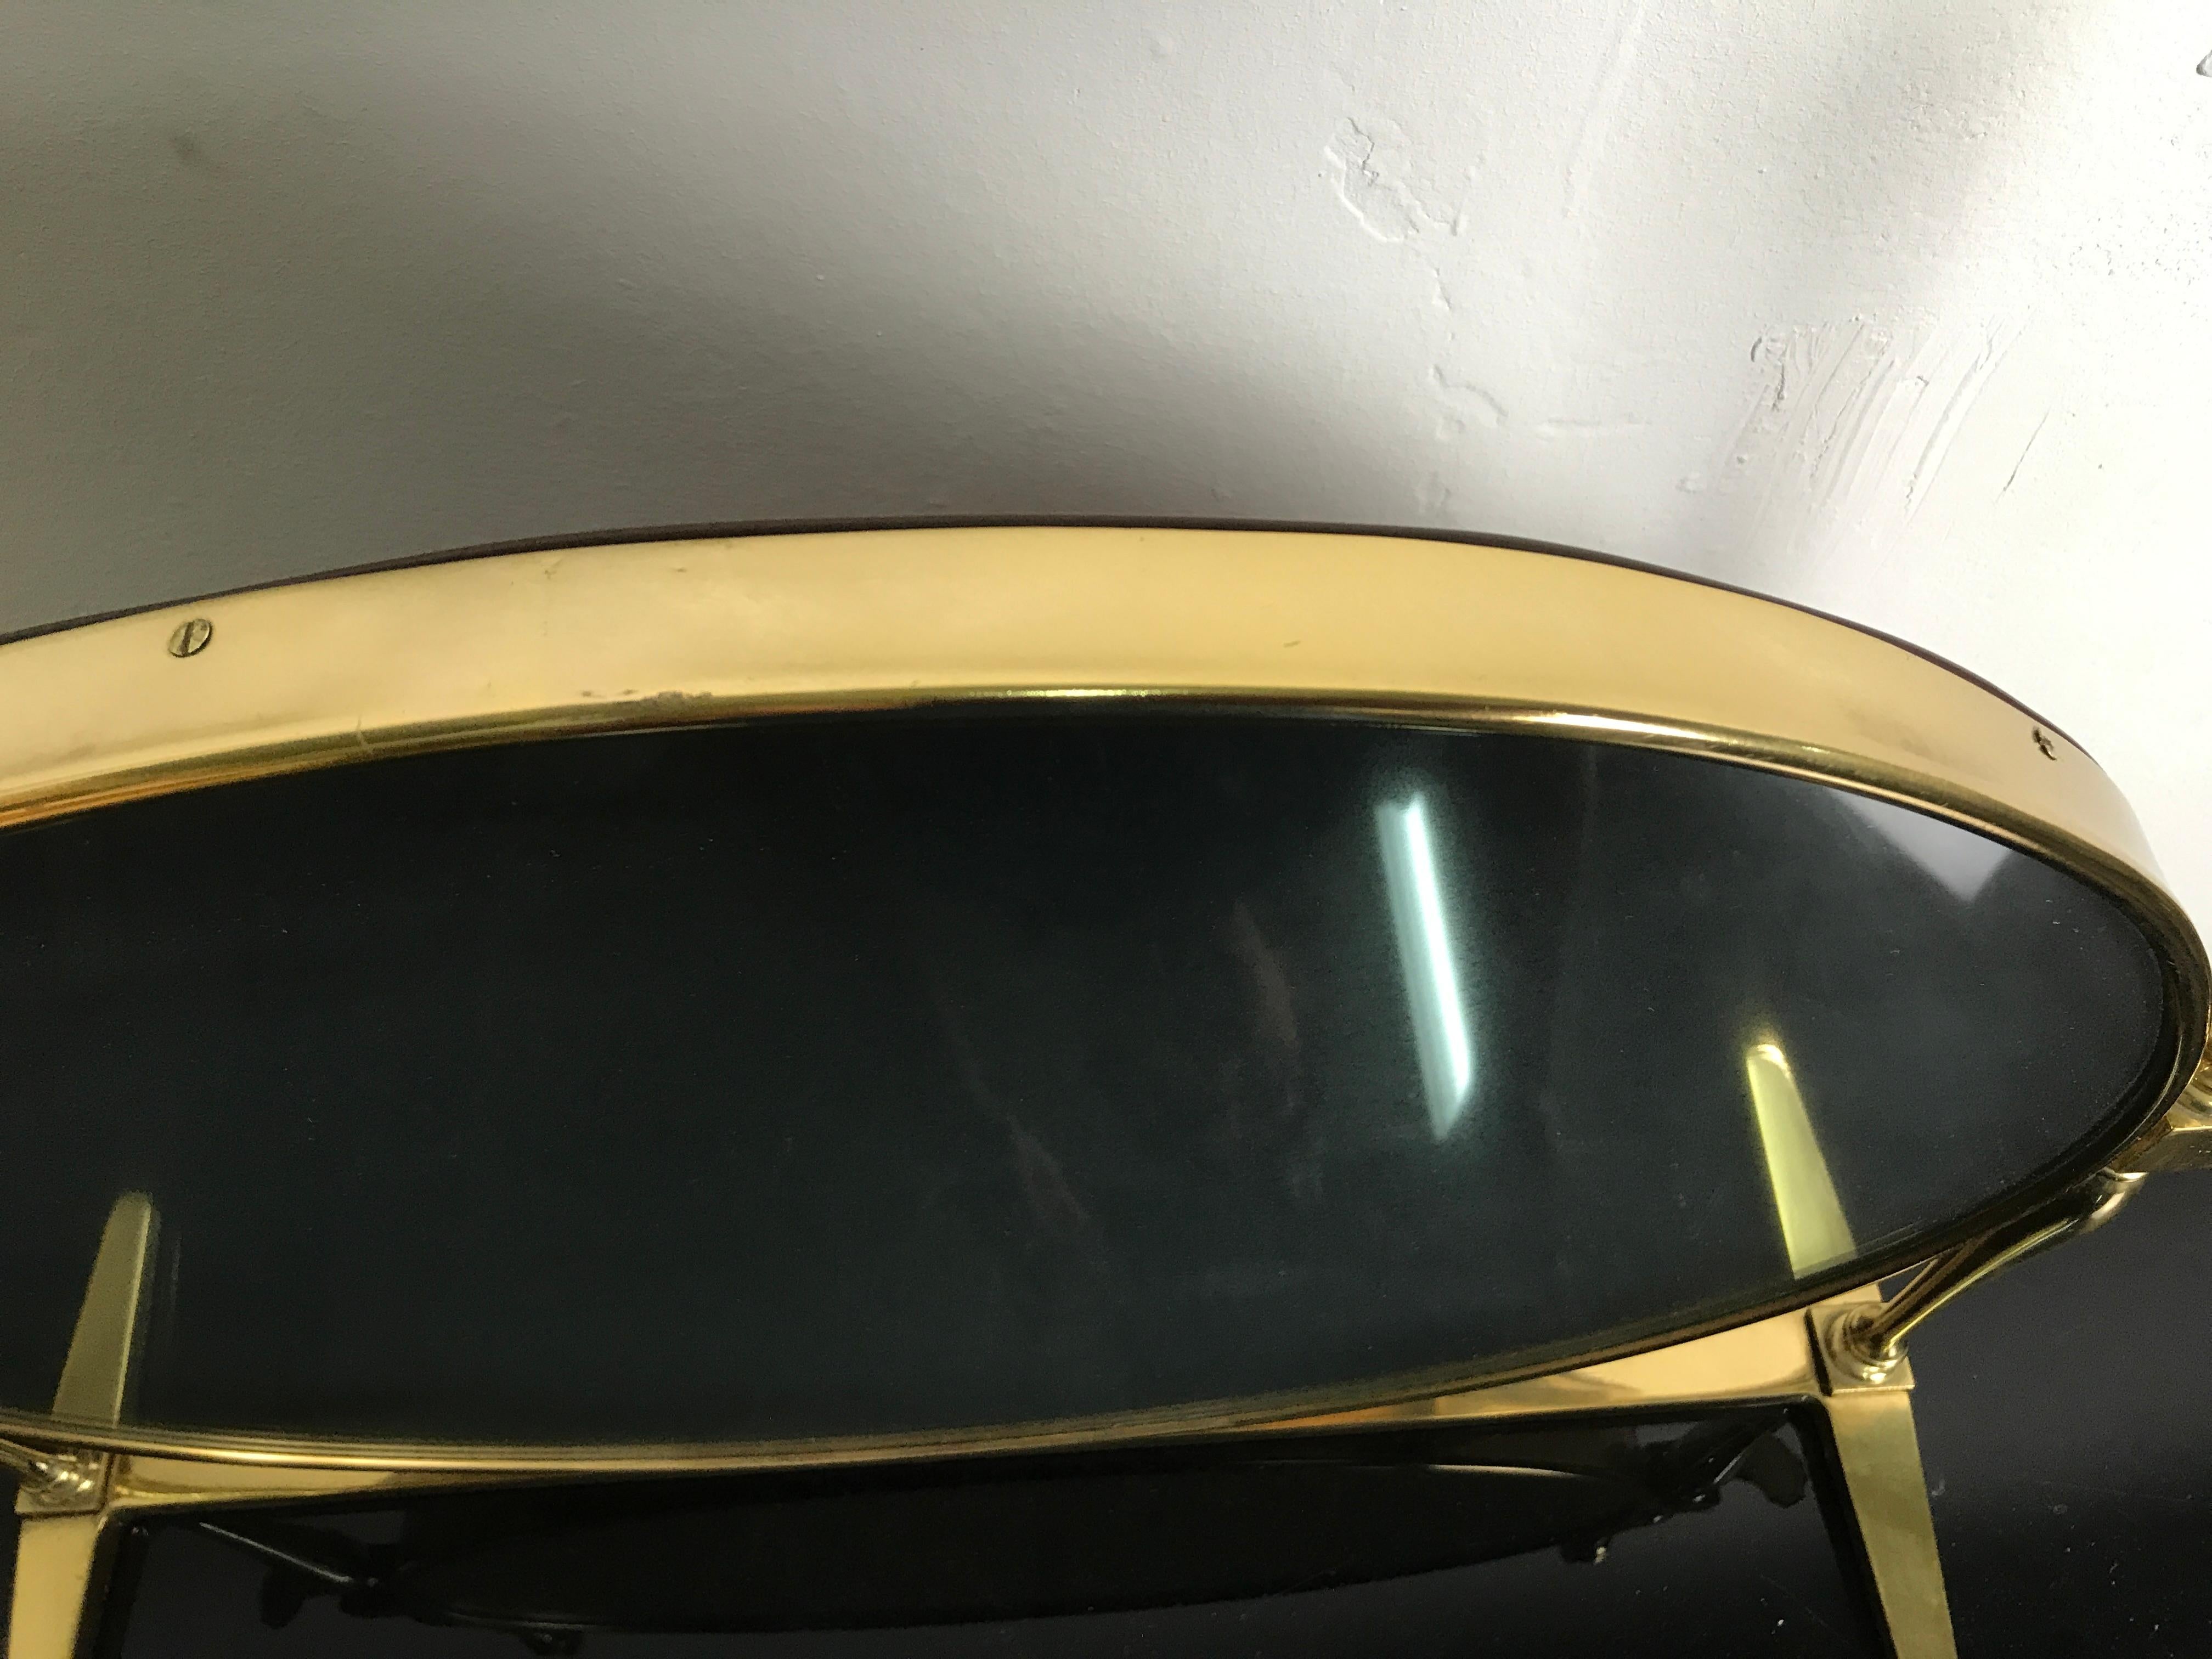 Specchio ovale regolabile in ottone anni 40-50 attribuibile al dedigner Paolo Buffa, le misure sono larghezza base cm55 larghezza max cm65 larghezza specchio cm50, altezza max cm50 altezza specchio cm40. Lo specchio è patinato, in quanto leggermente